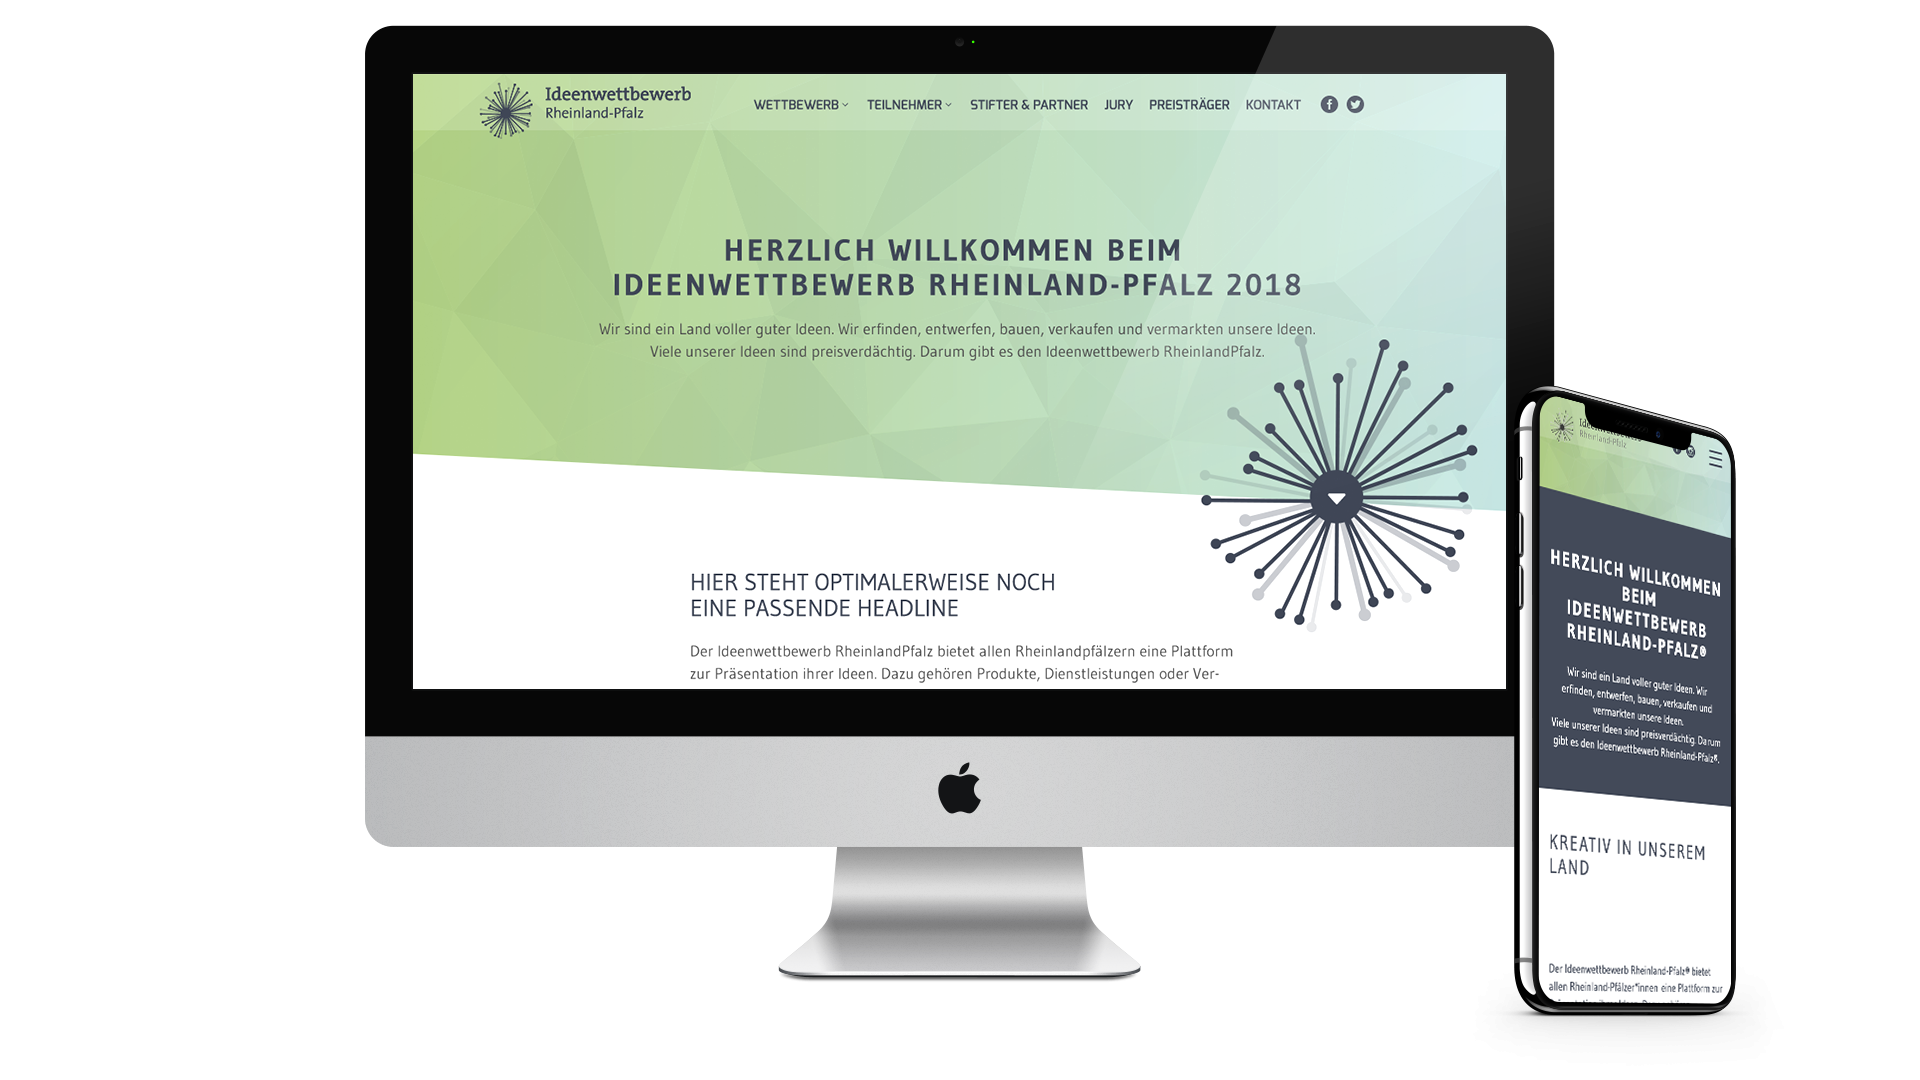 Webseite vom Ideenwettbewerb Rheinland-Pfalz auf dem iMac und iPhone